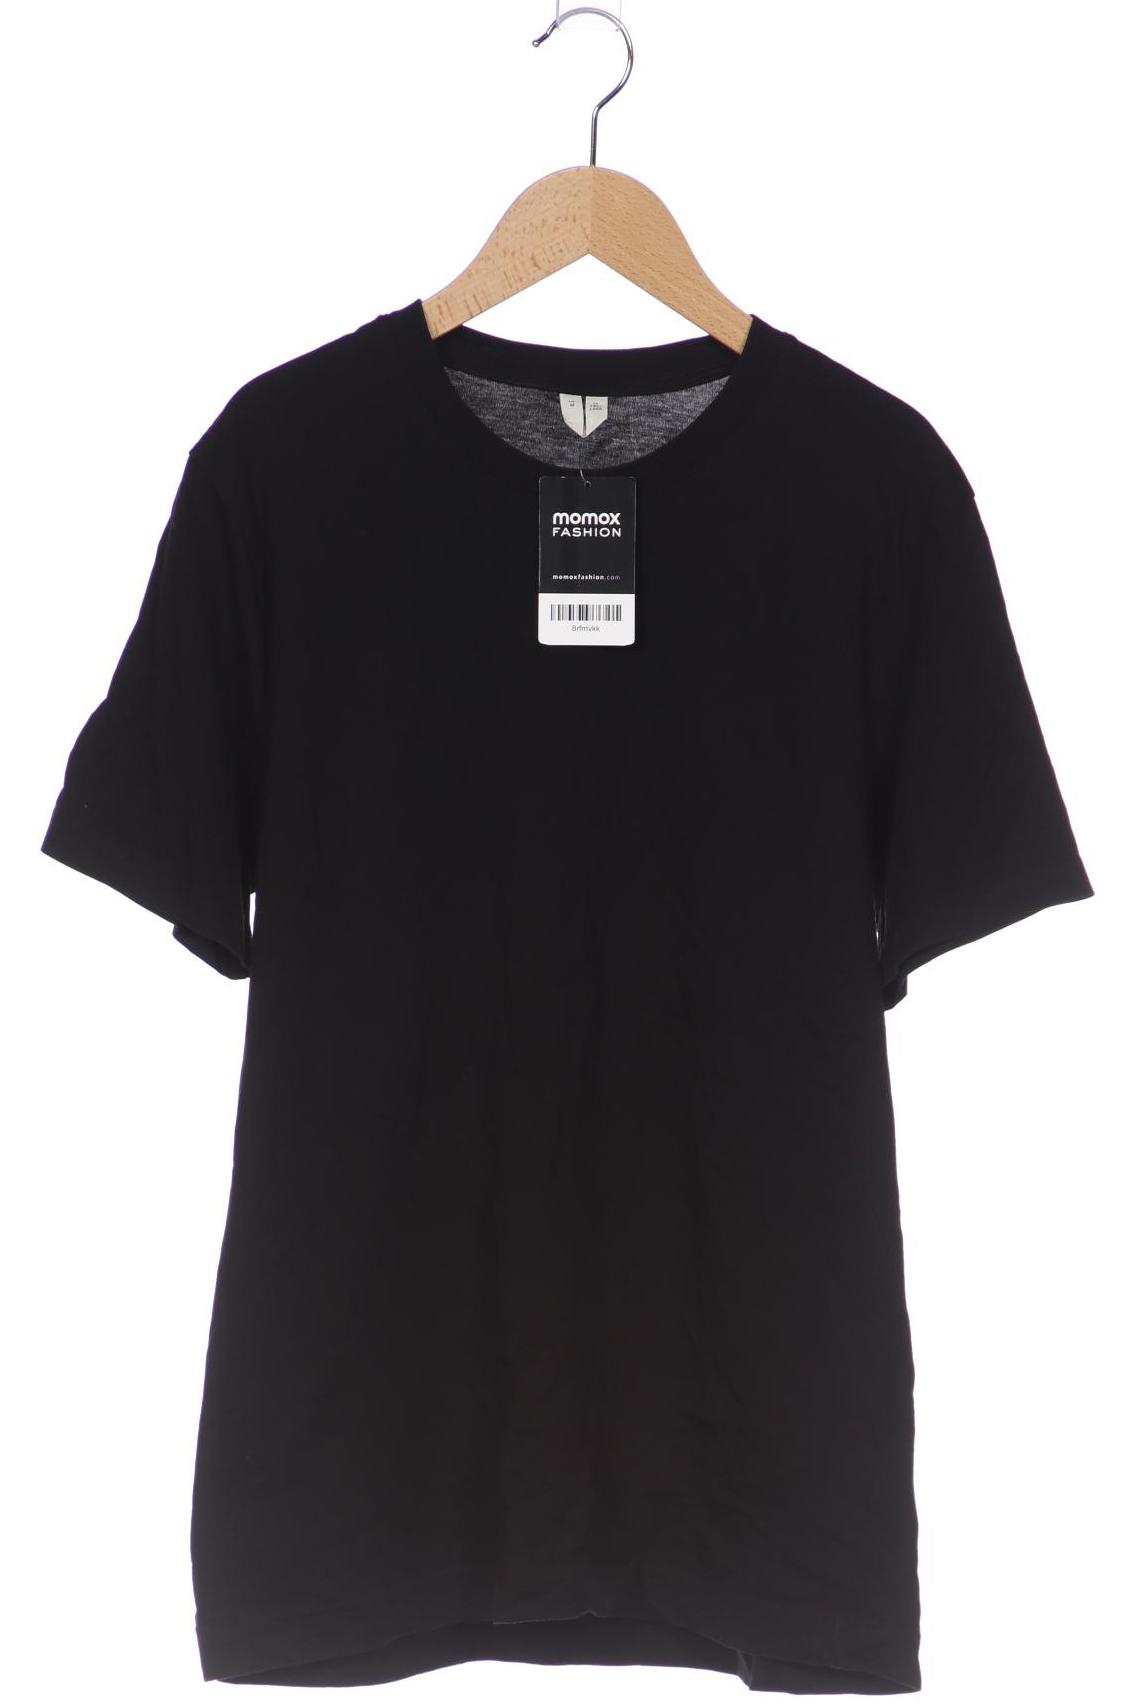 Arket Herren T-Shirt, schwarz, Gr. 48 von Arket